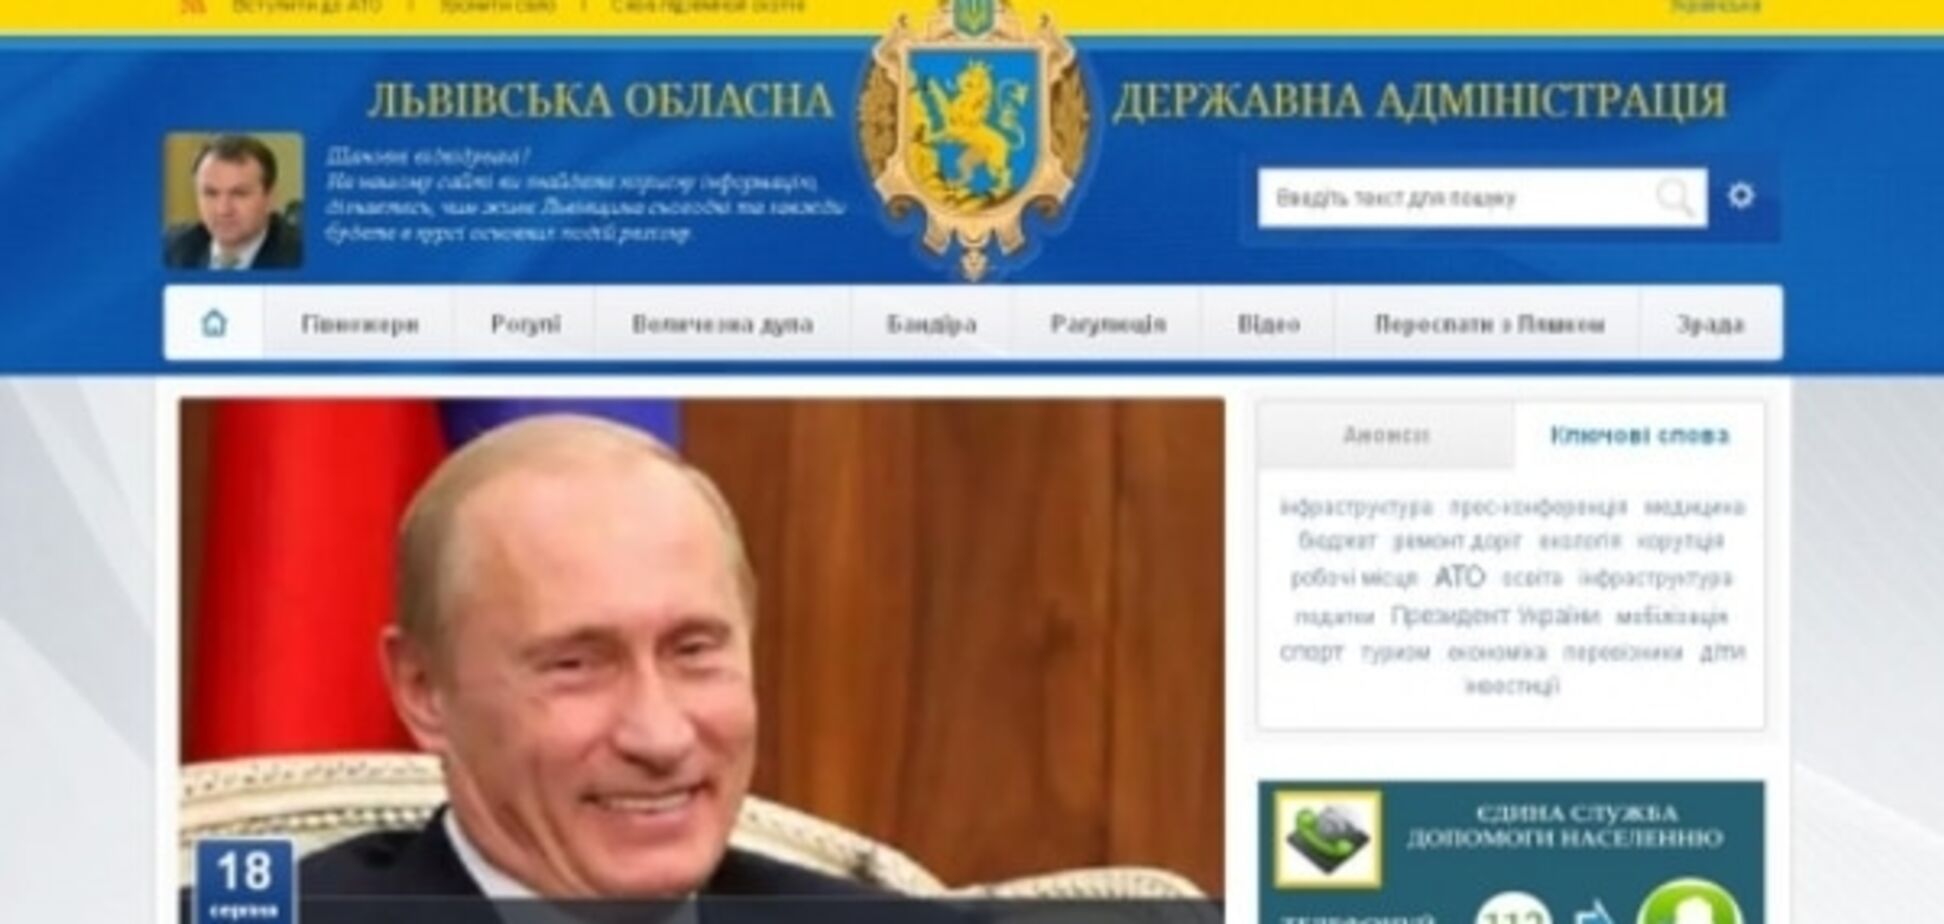 Хакеры испортили сайт Львовской ОГА фотографией Путина и 'компании': опубликовано фото